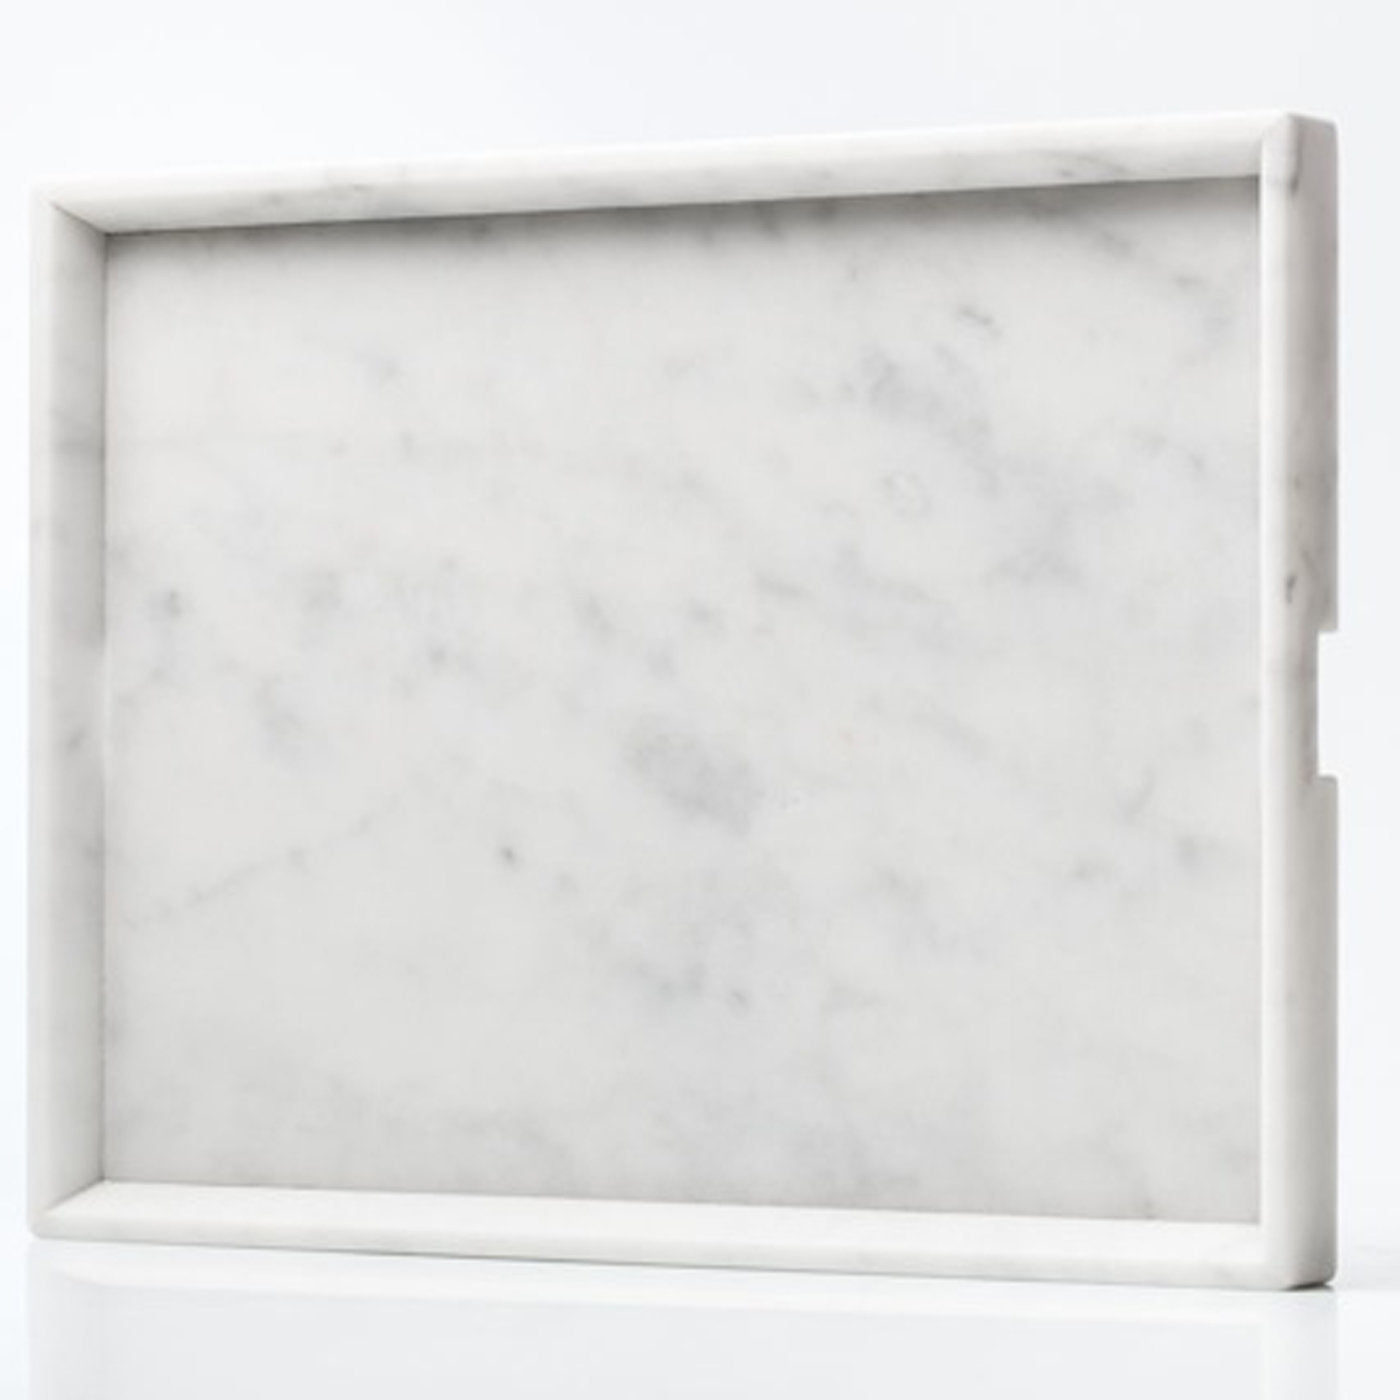 Convivio Maxi Tray in Carrara Marble - Alternative view 1